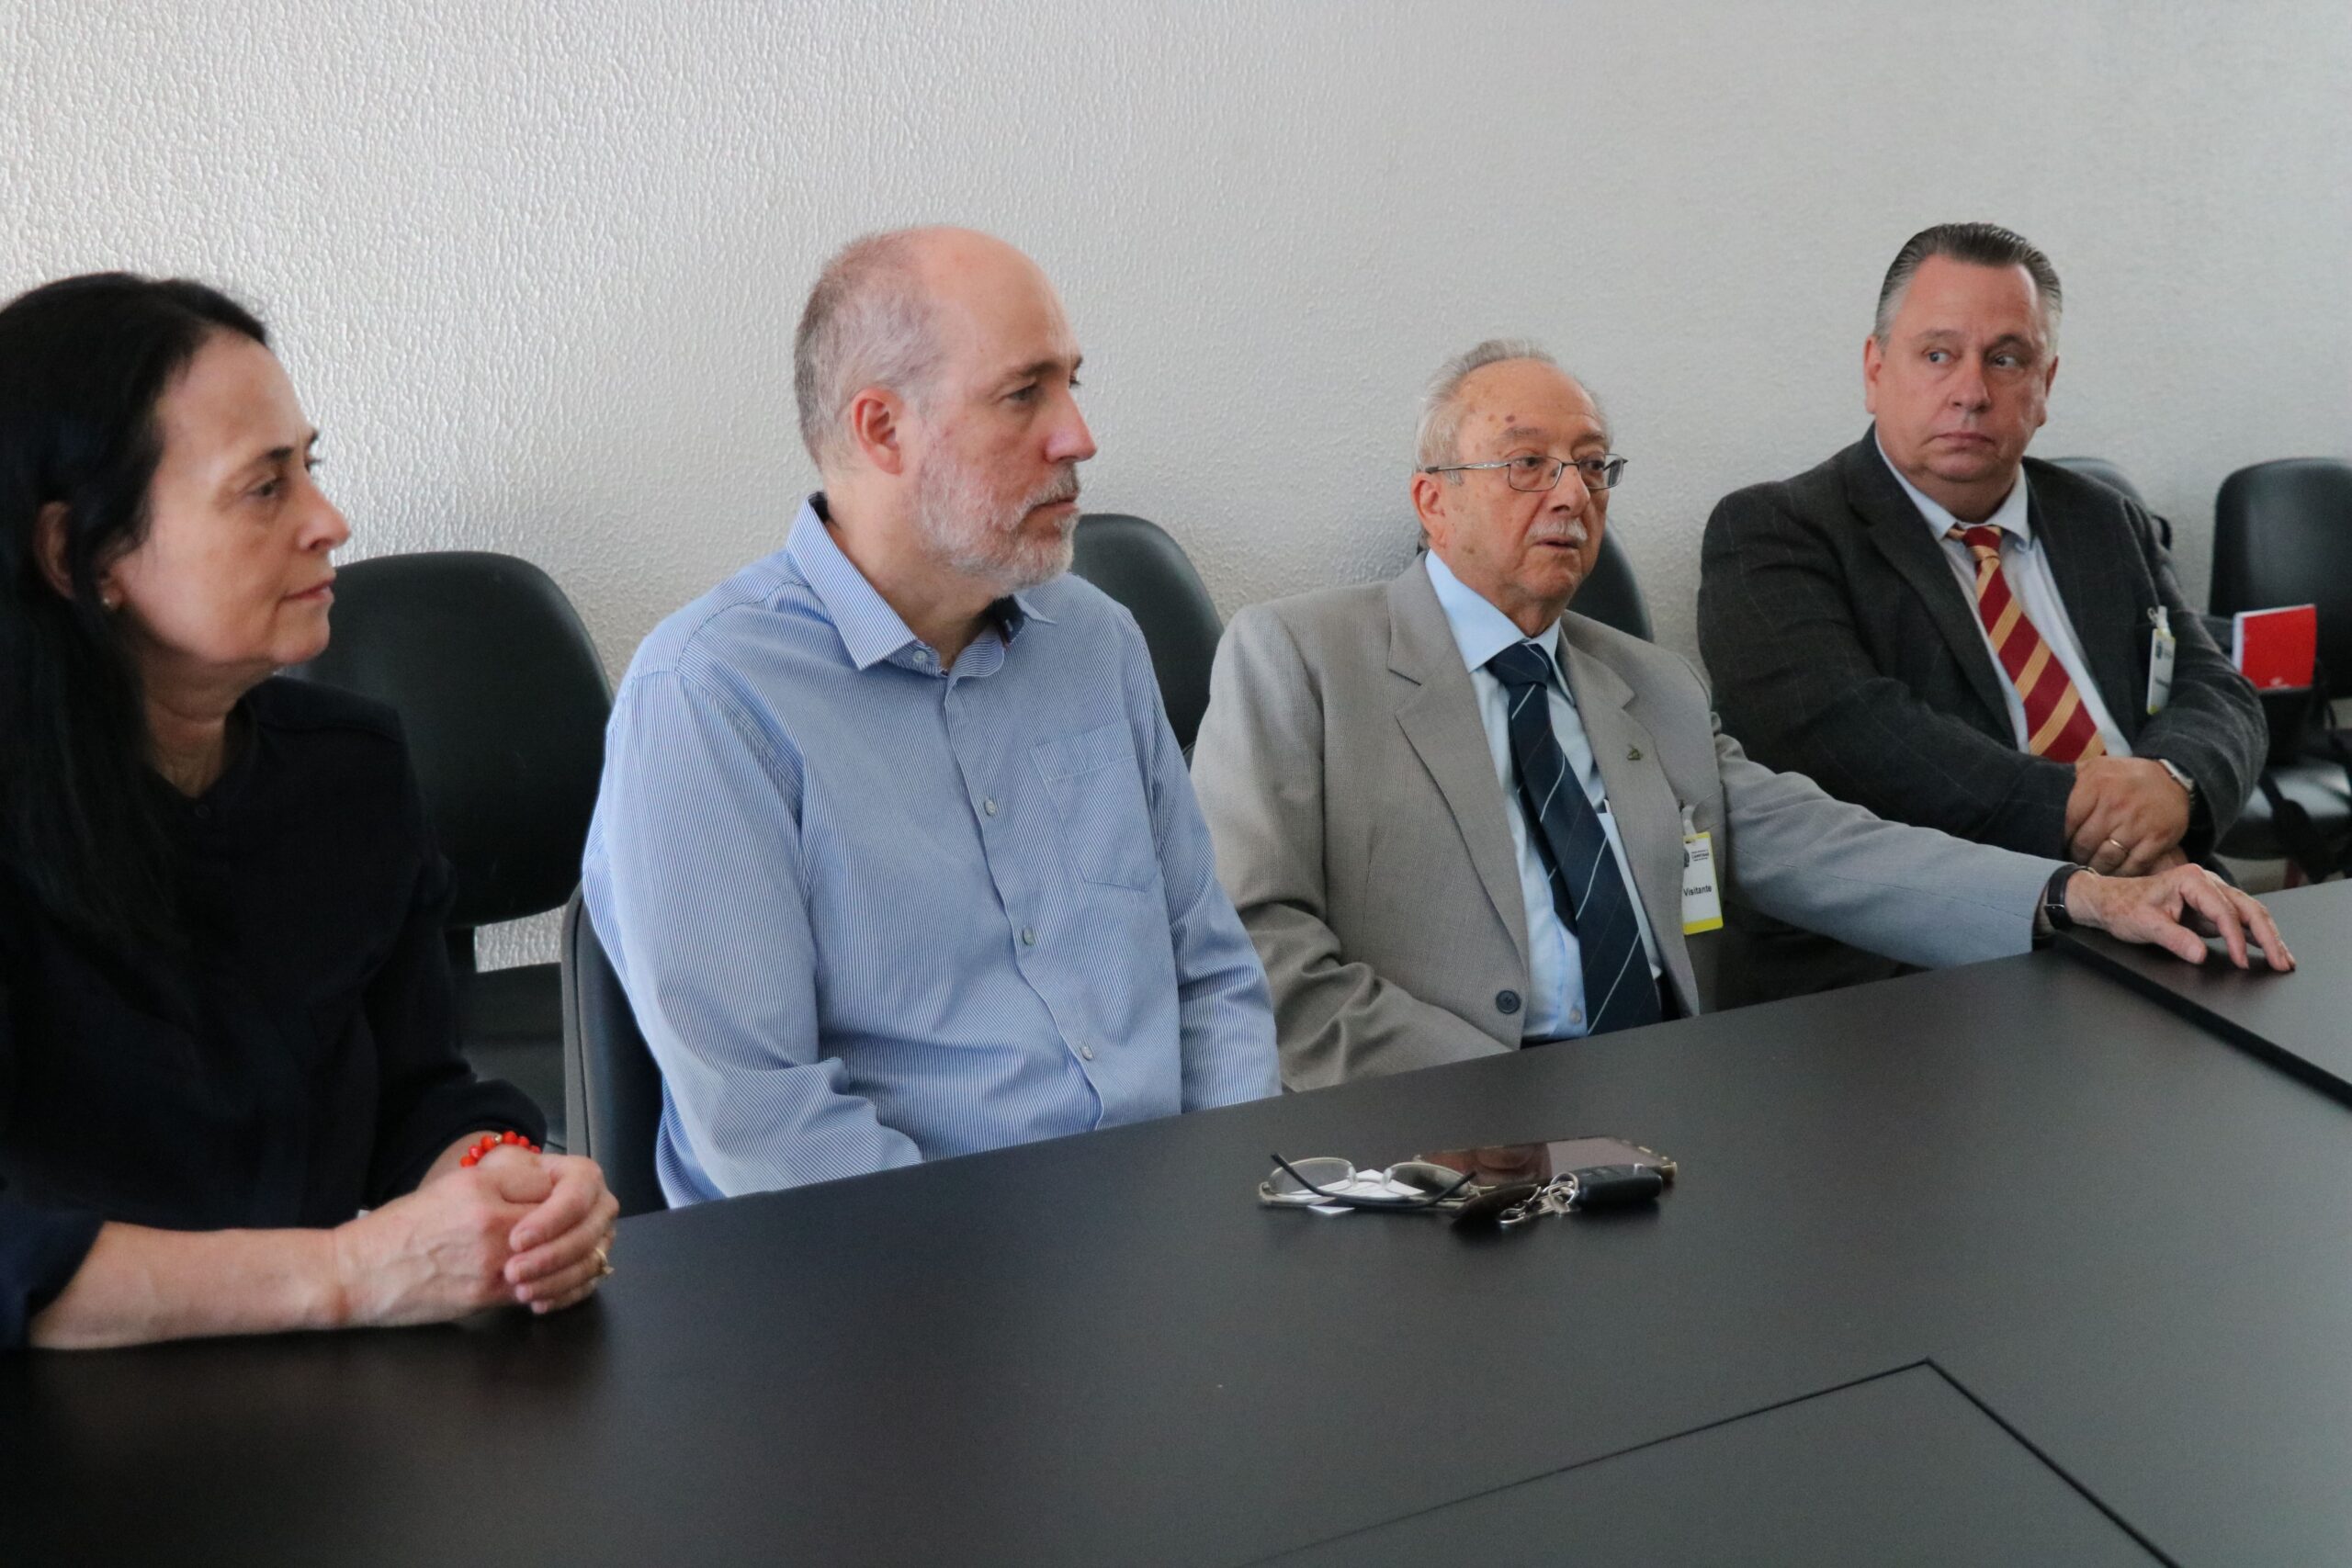 Na foto aparecem três homens e uma mulher sentados atrás de uma mesa preta. Trata-se do vereador por Campinas e sua suplente, e dois representantes do CRMV-SP.